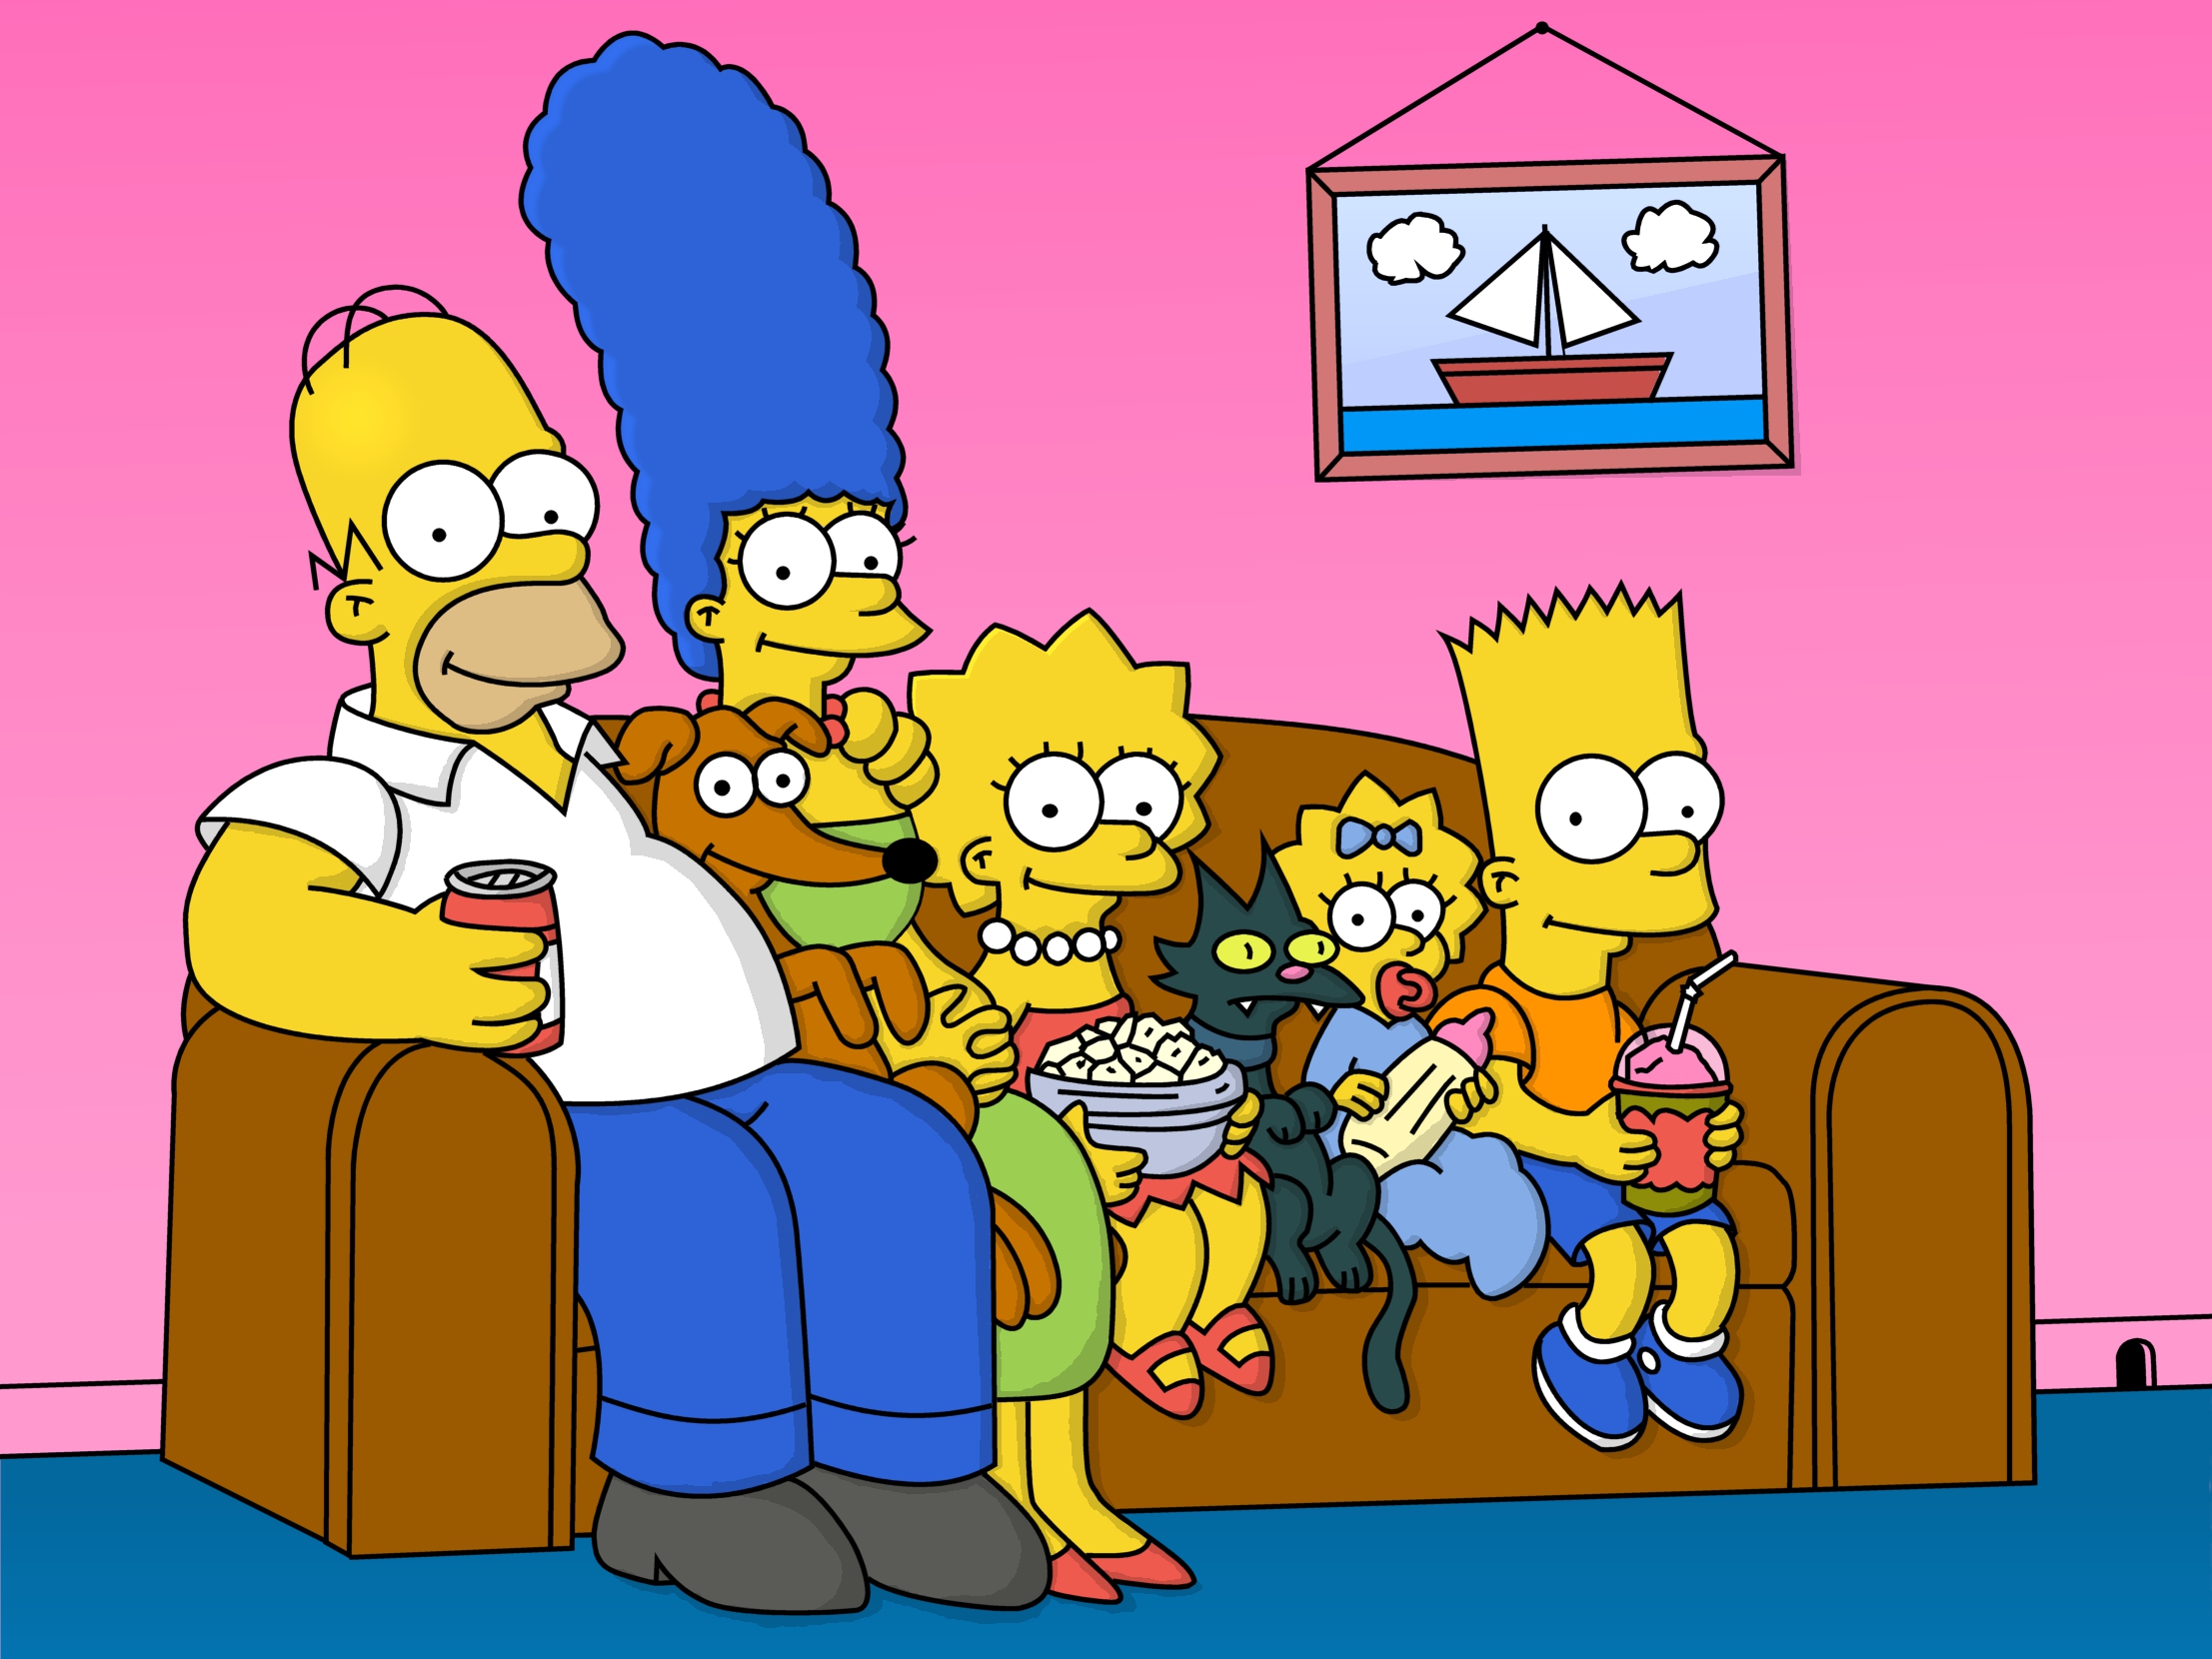 Симпсоны - самый длинный мультсериал в истории американского телевидения, длящийся 28 сезонов и продленный до 30-го - фото 1